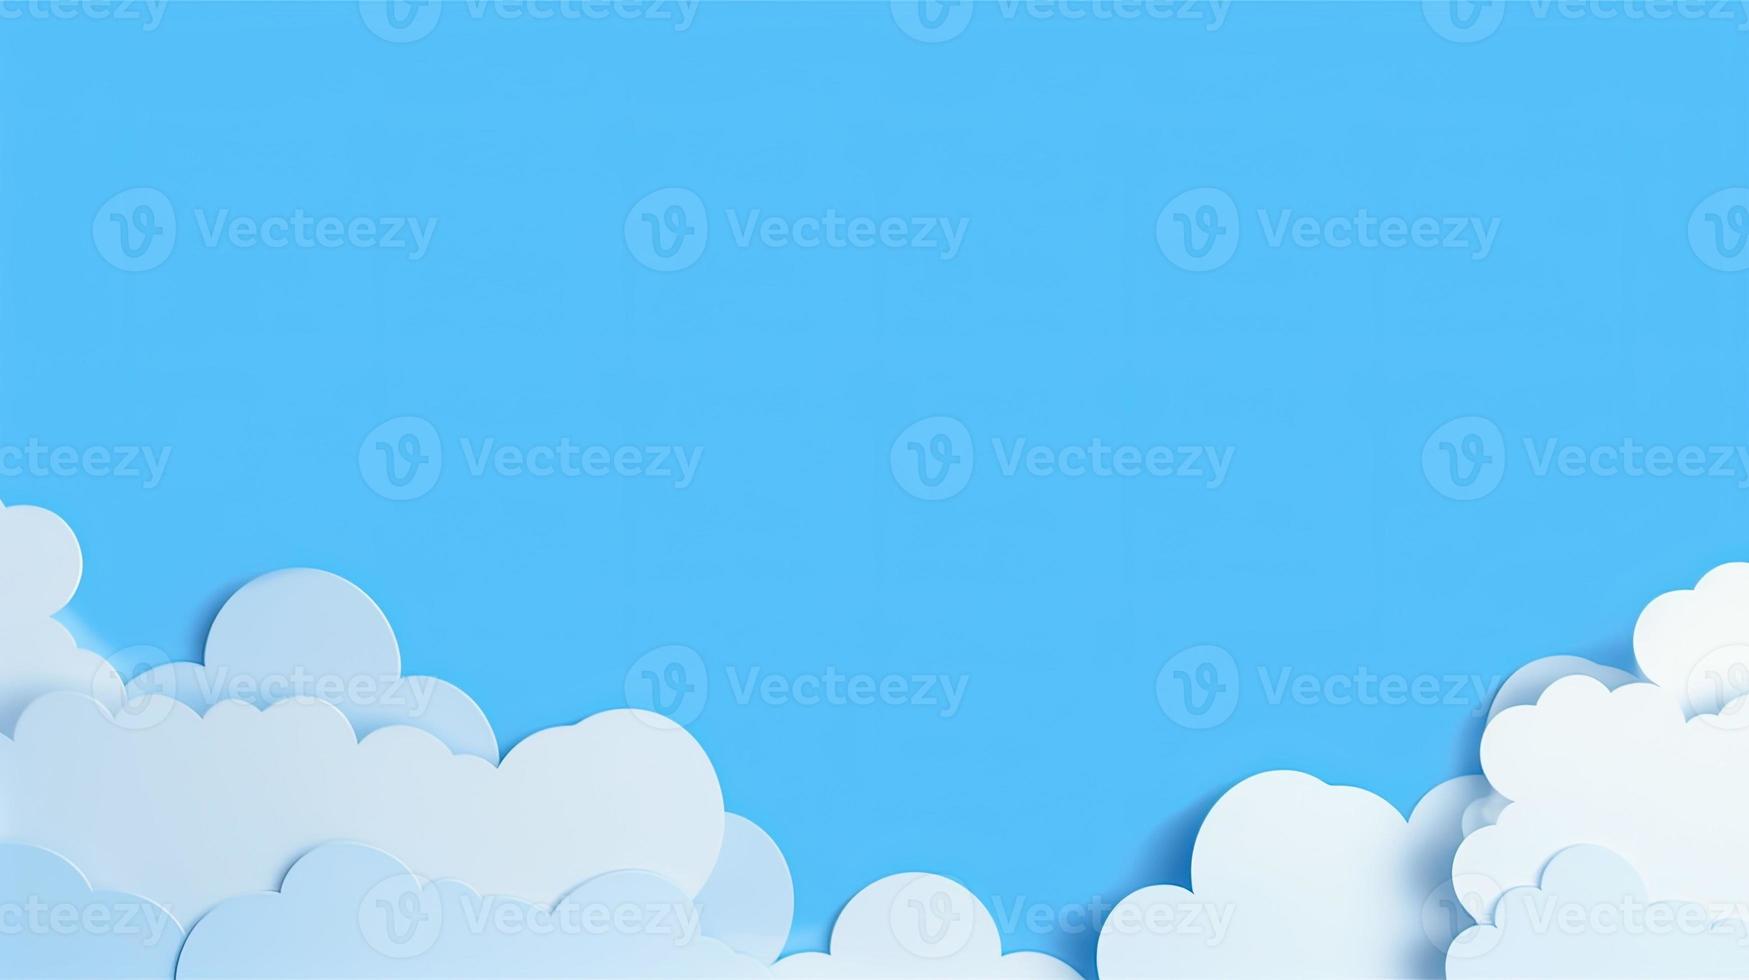 papier wolken Aan blauw lucht achtergrond. 3d illustratie met kopiëren ruimte foto